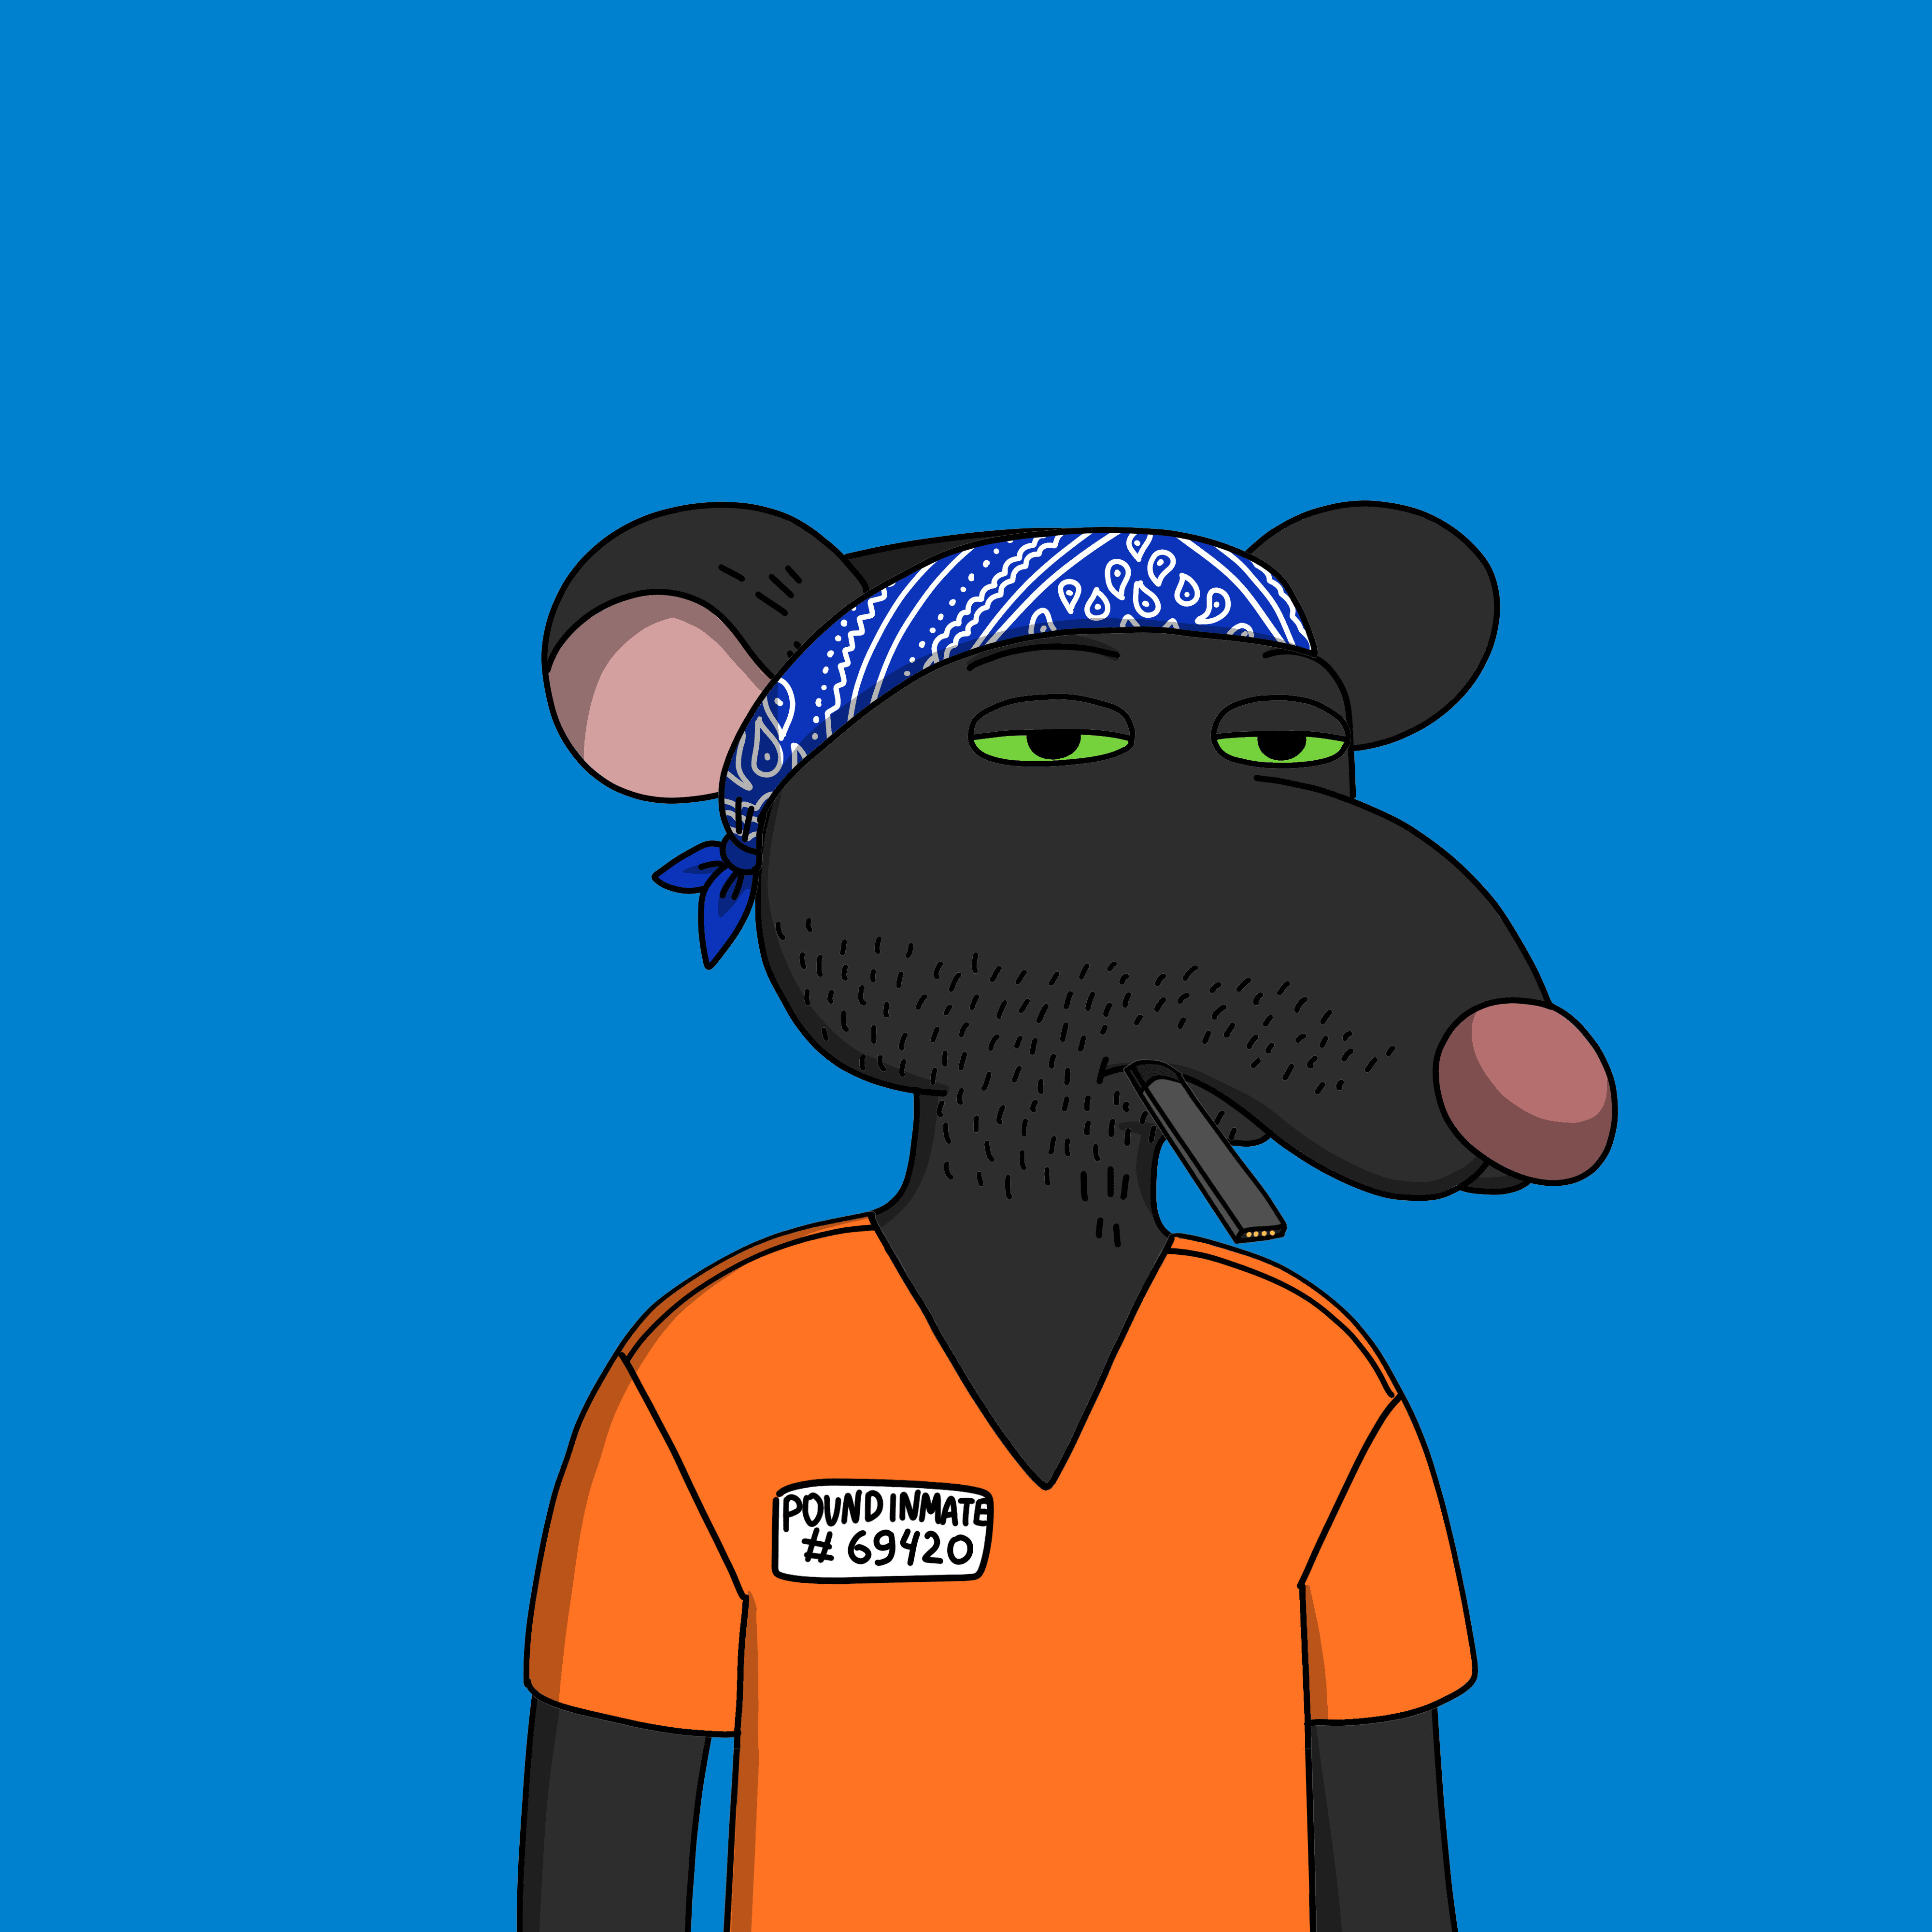 Gutter Rat #2619